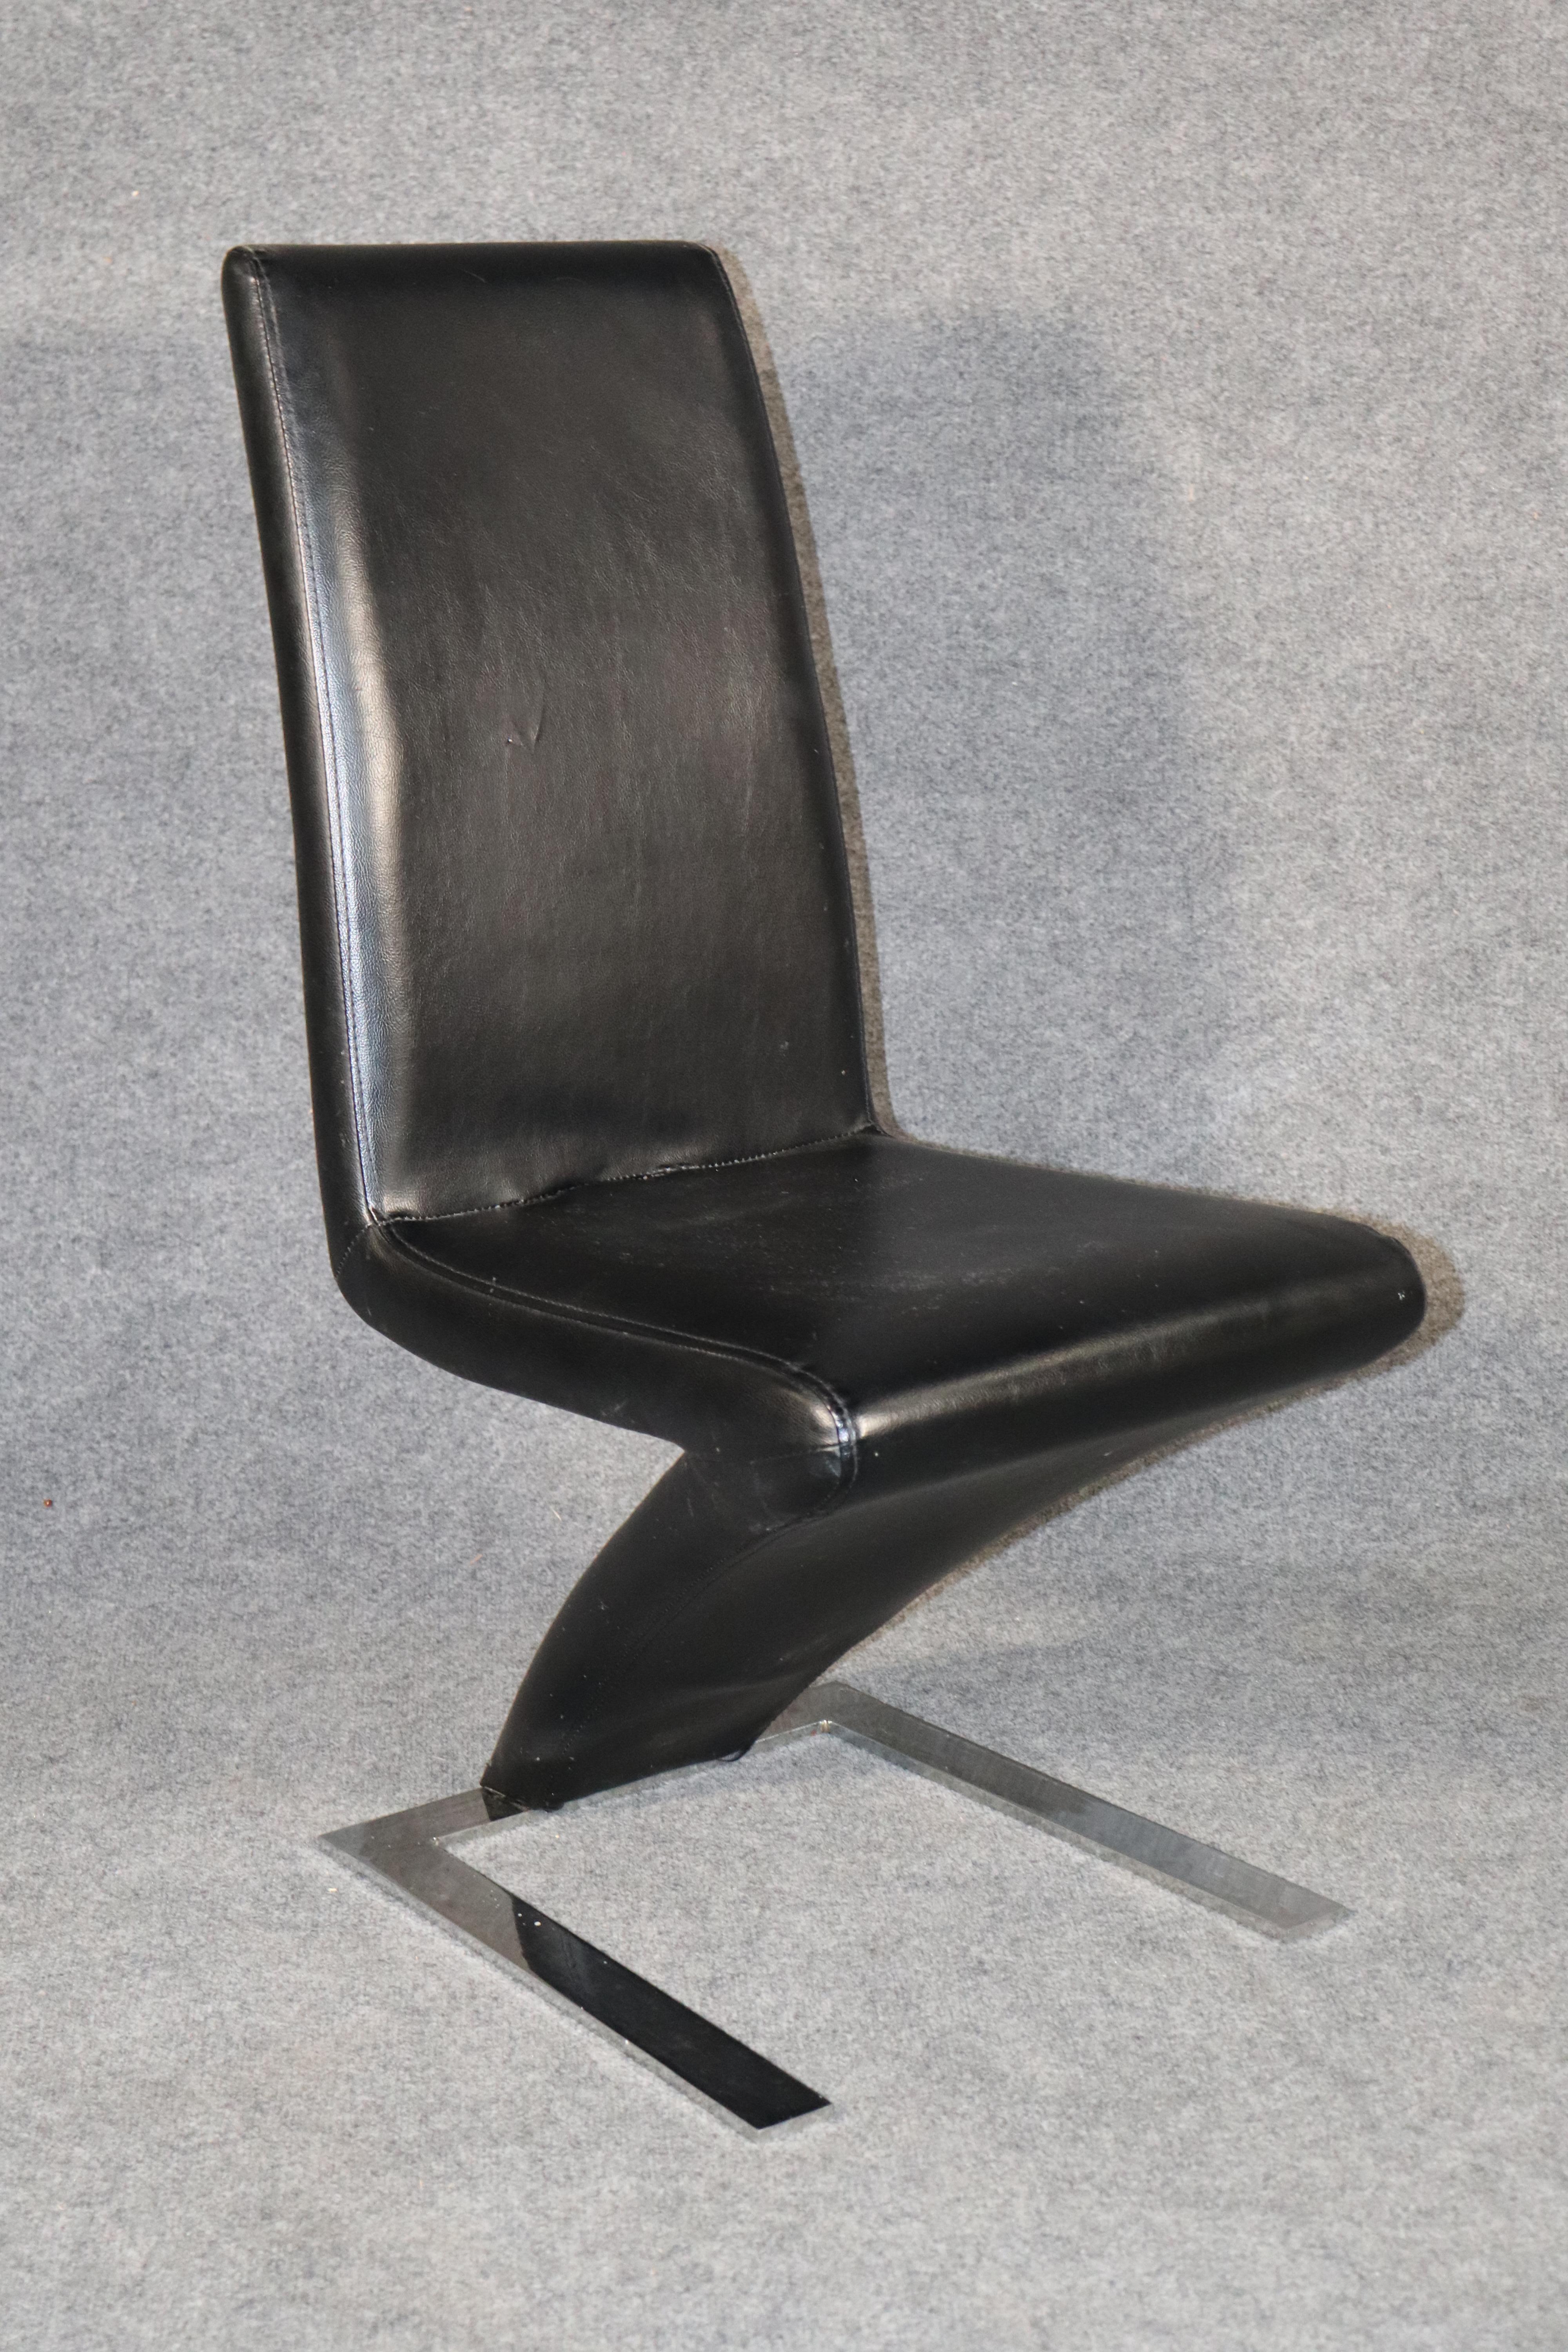 Moderne Esszimmerstühle mit einem Z-förmigen Ledersitz auf einem verchromten Metallgestell.
Bitte bestätigen Sie den Standort.